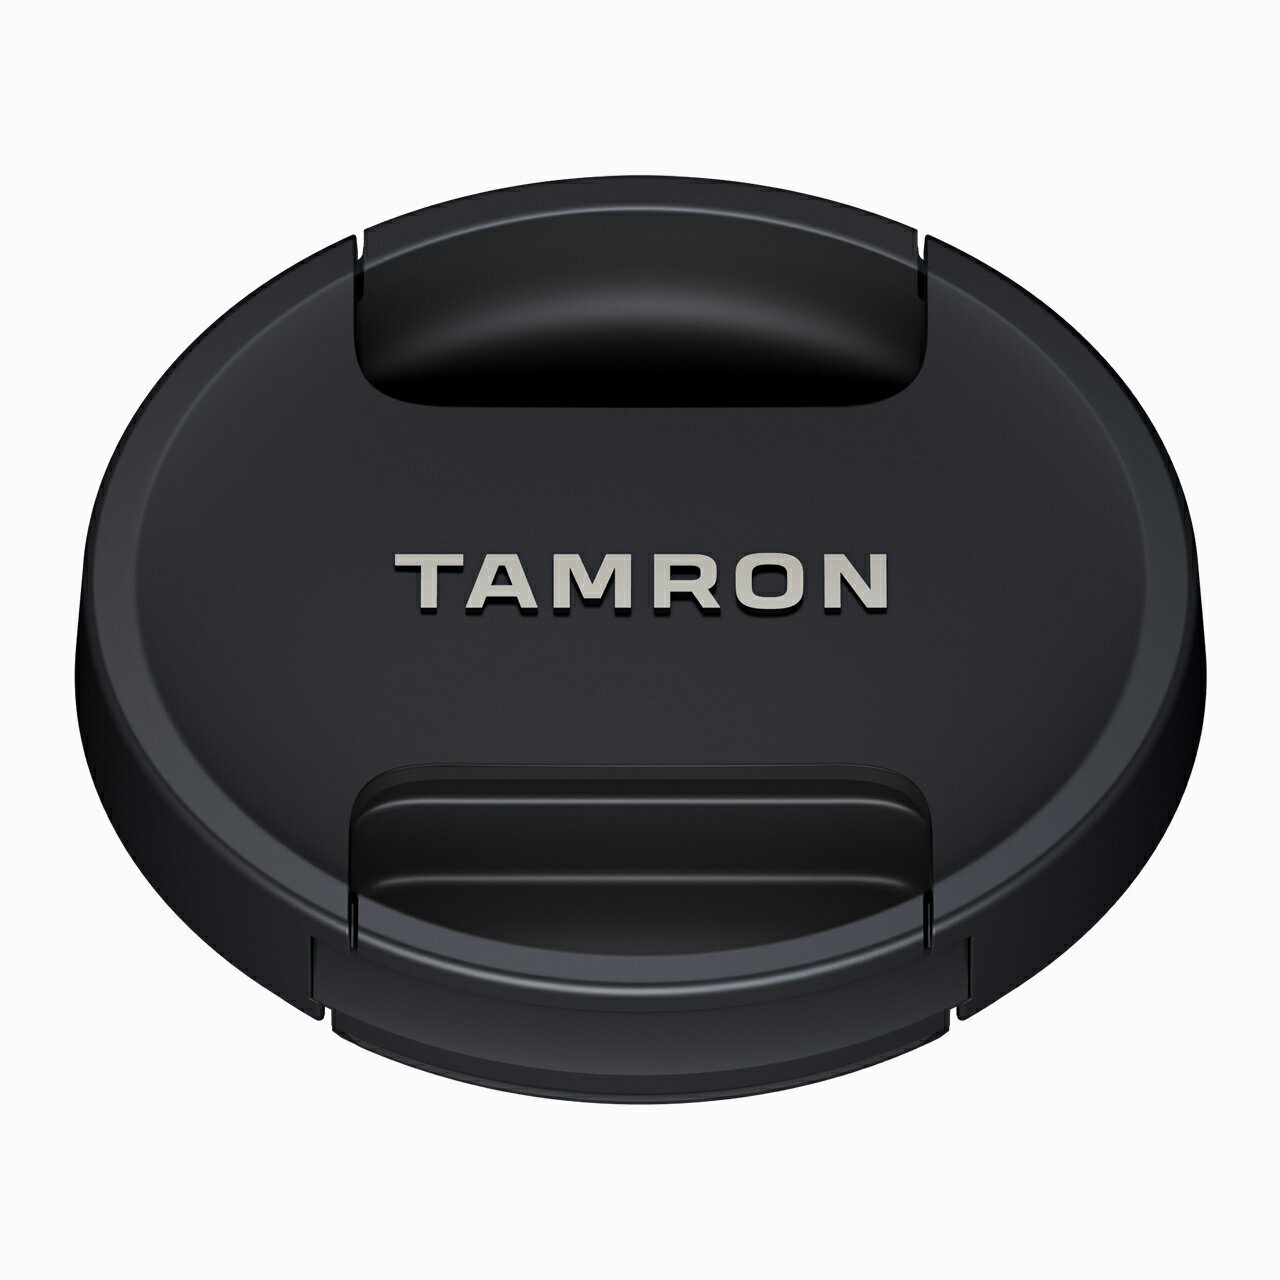 タムロン TAMRON　レンズキャップ77mm フィルター径77mmのレンズ用レンズキャップです。 タムロン製のレンズには、全てレンズキャップが標準付属されています。 紛失・破損などの予備としてお買い求めください。 ※メーカー状況により外観デザインが異なる場合がございます。